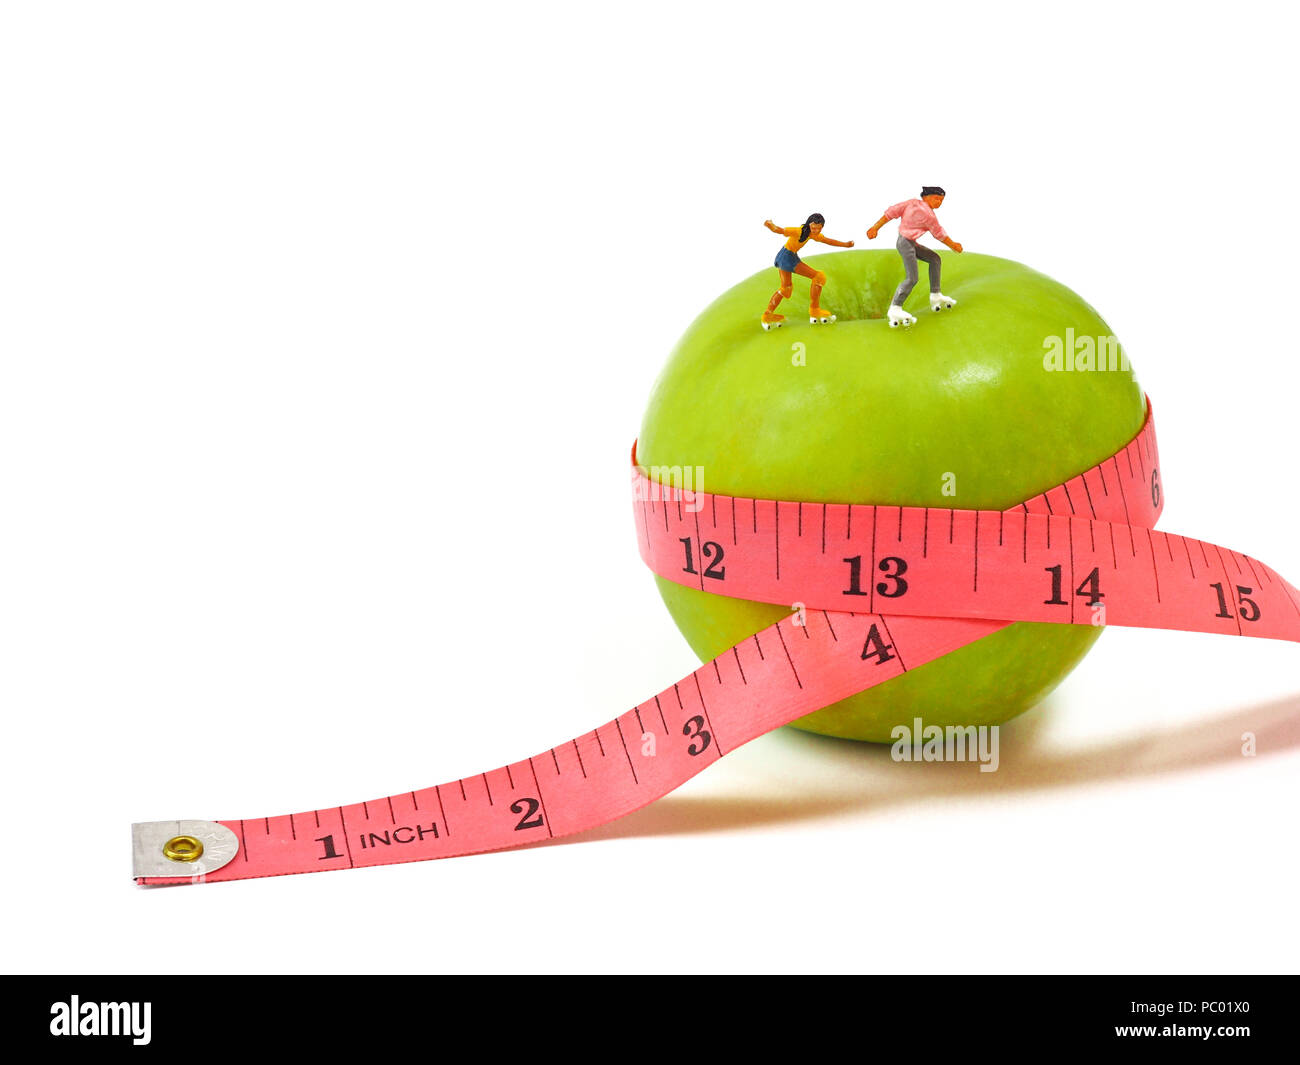 Miniatur Frau Schlittschuhlaufen auf grünem Apfel und Maßband, das Denken von Gewichtsverlust und schlanken Körper. Gesunder Lebensstil Konzept. Stockfoto